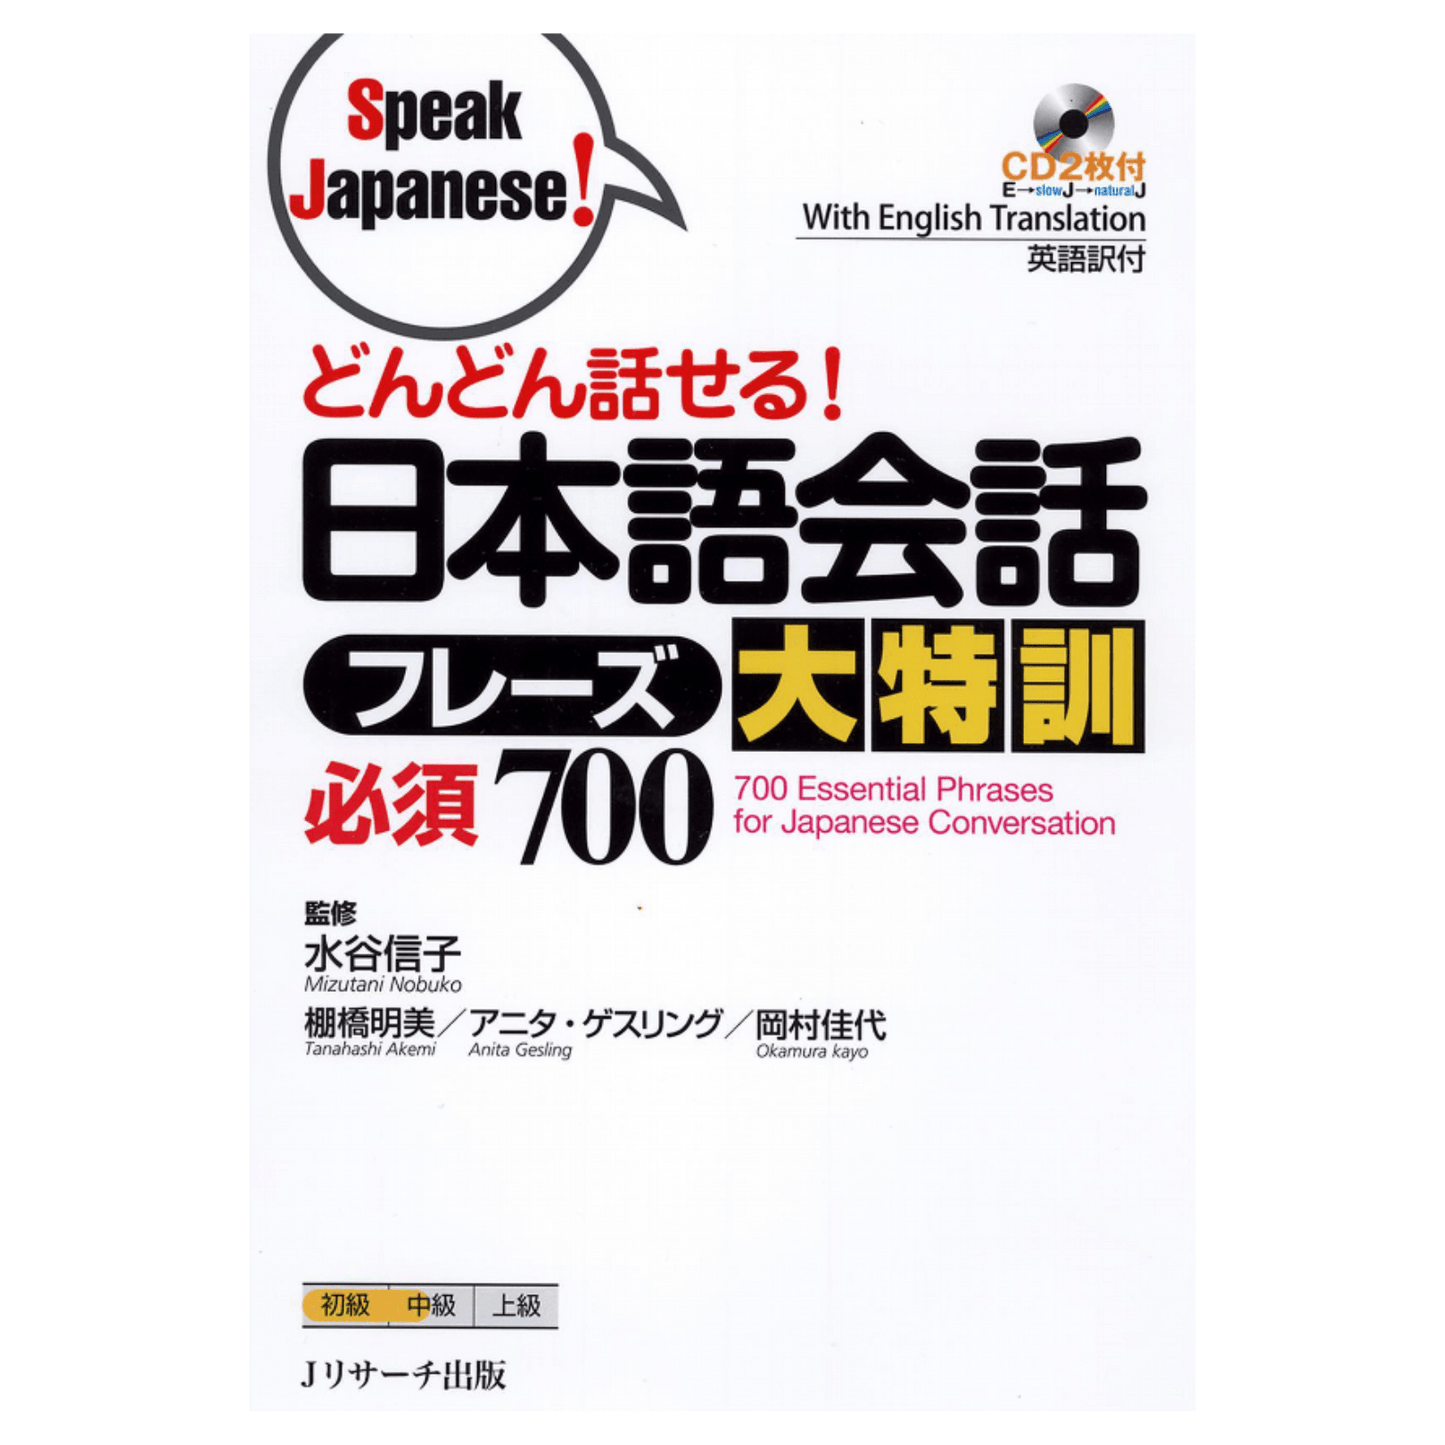 日语手册 | 说日语！ -どんどん话せる！ ChitoroShop